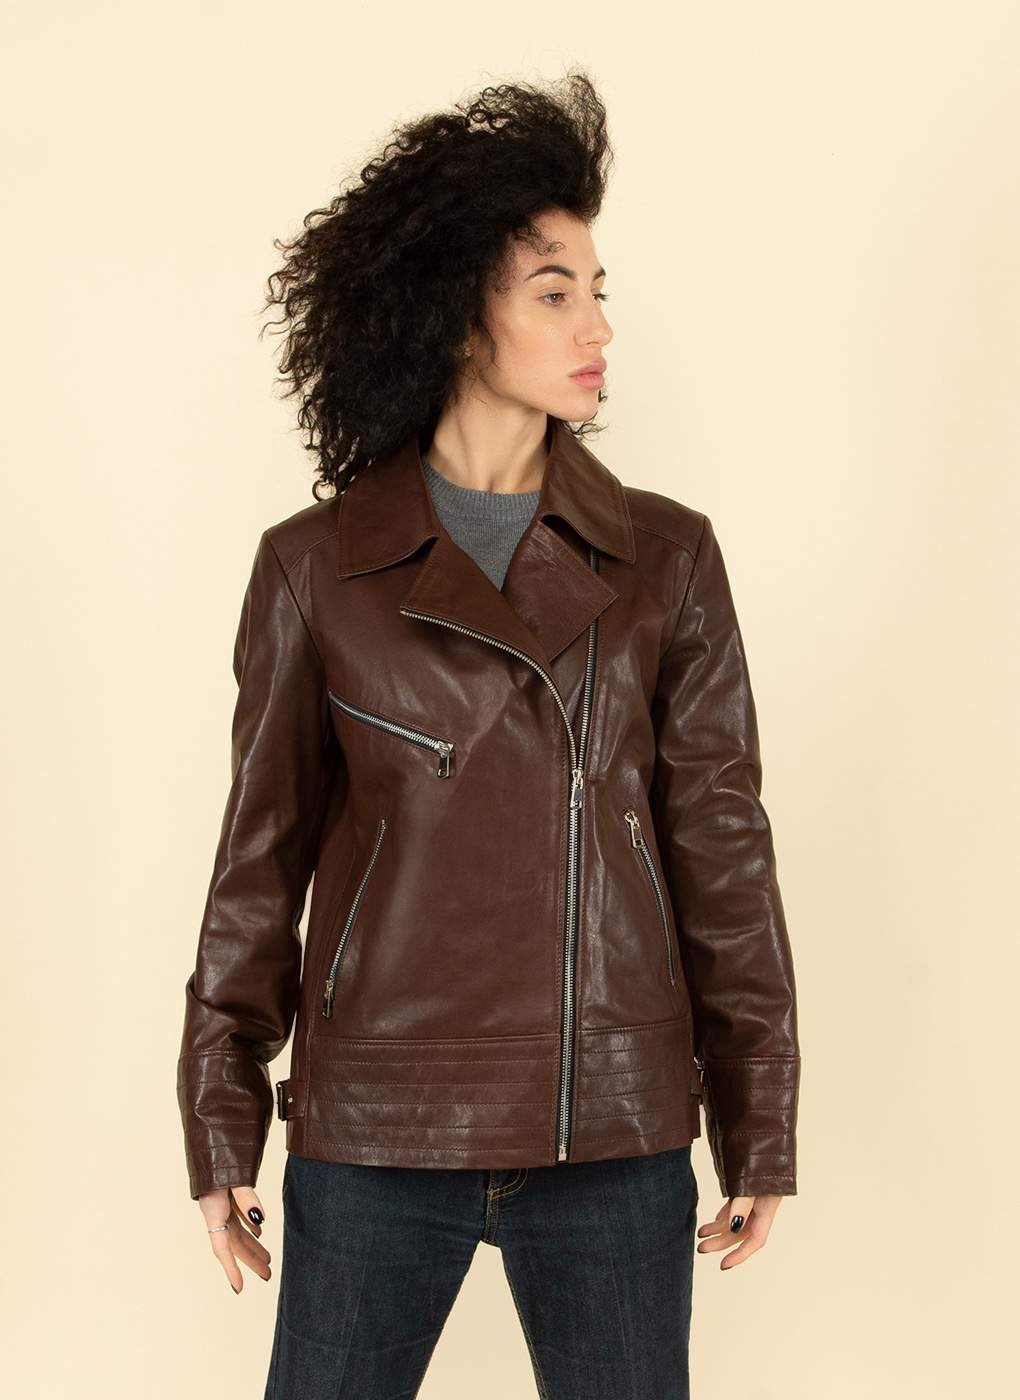 Кожаная куртка женская Каляев 55130 коричневая 44 RU